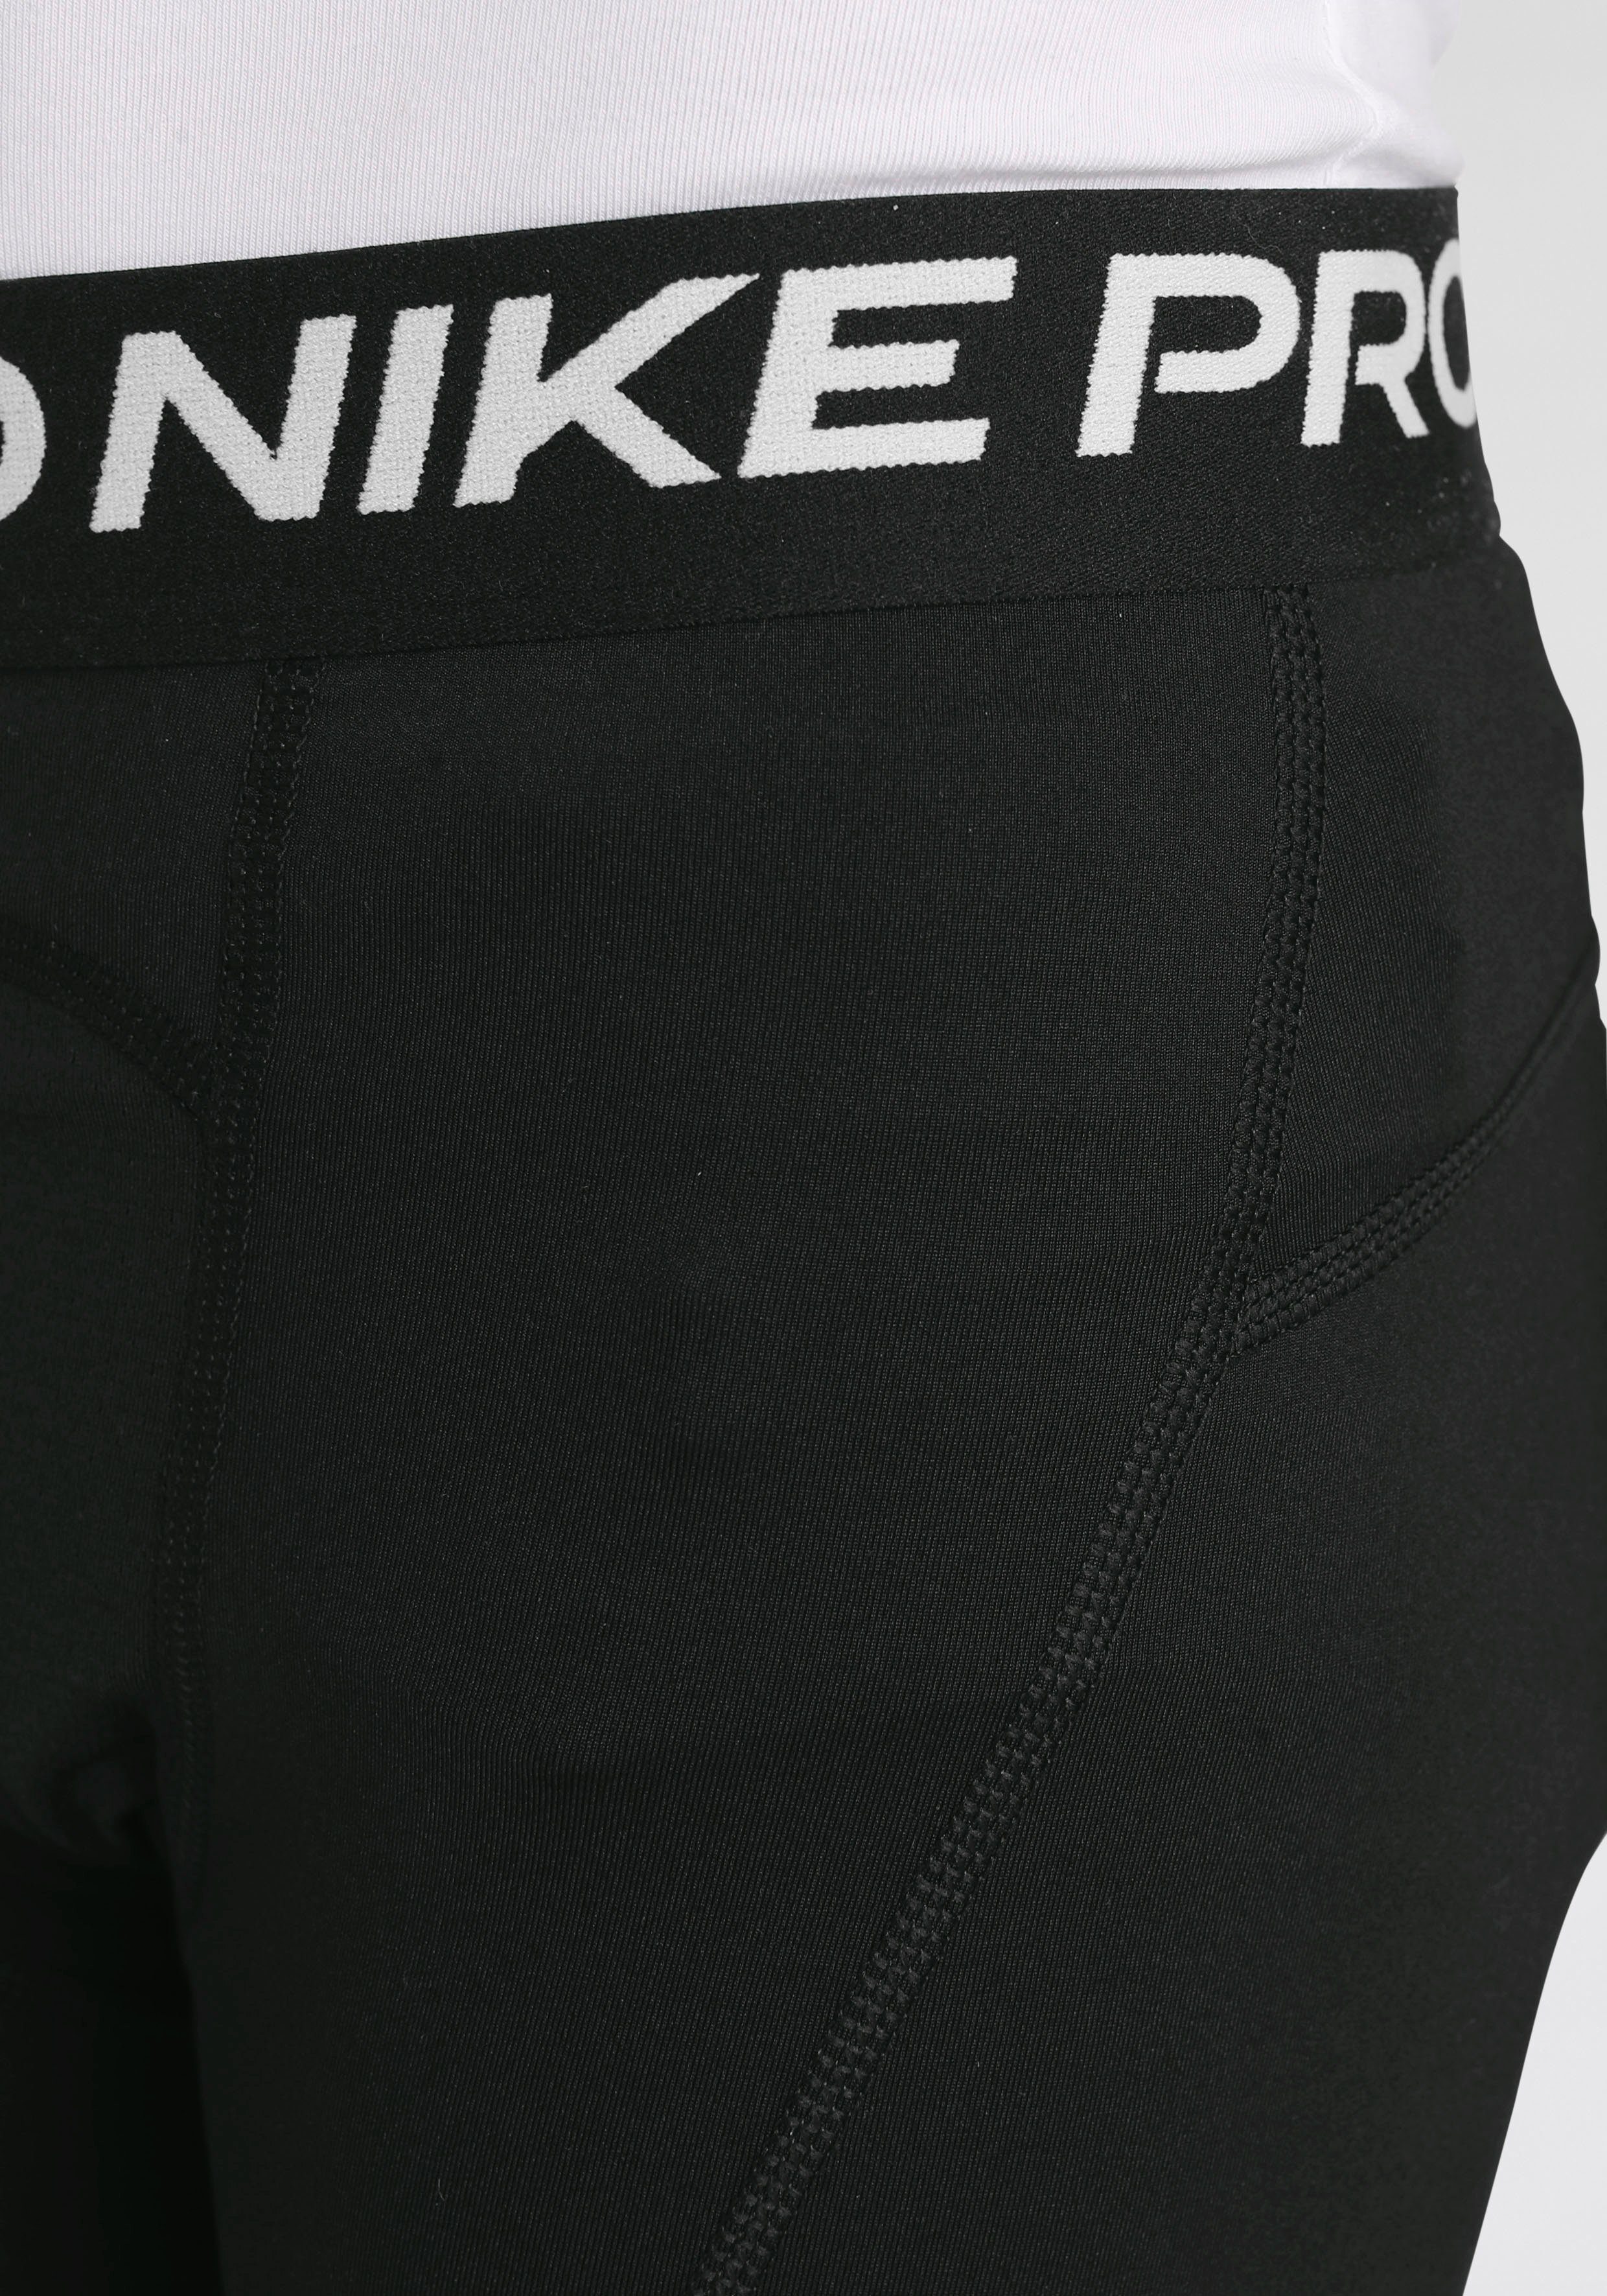 (Boys) Shorts Dri-FIT Pro Shorts Nike Big Kids'